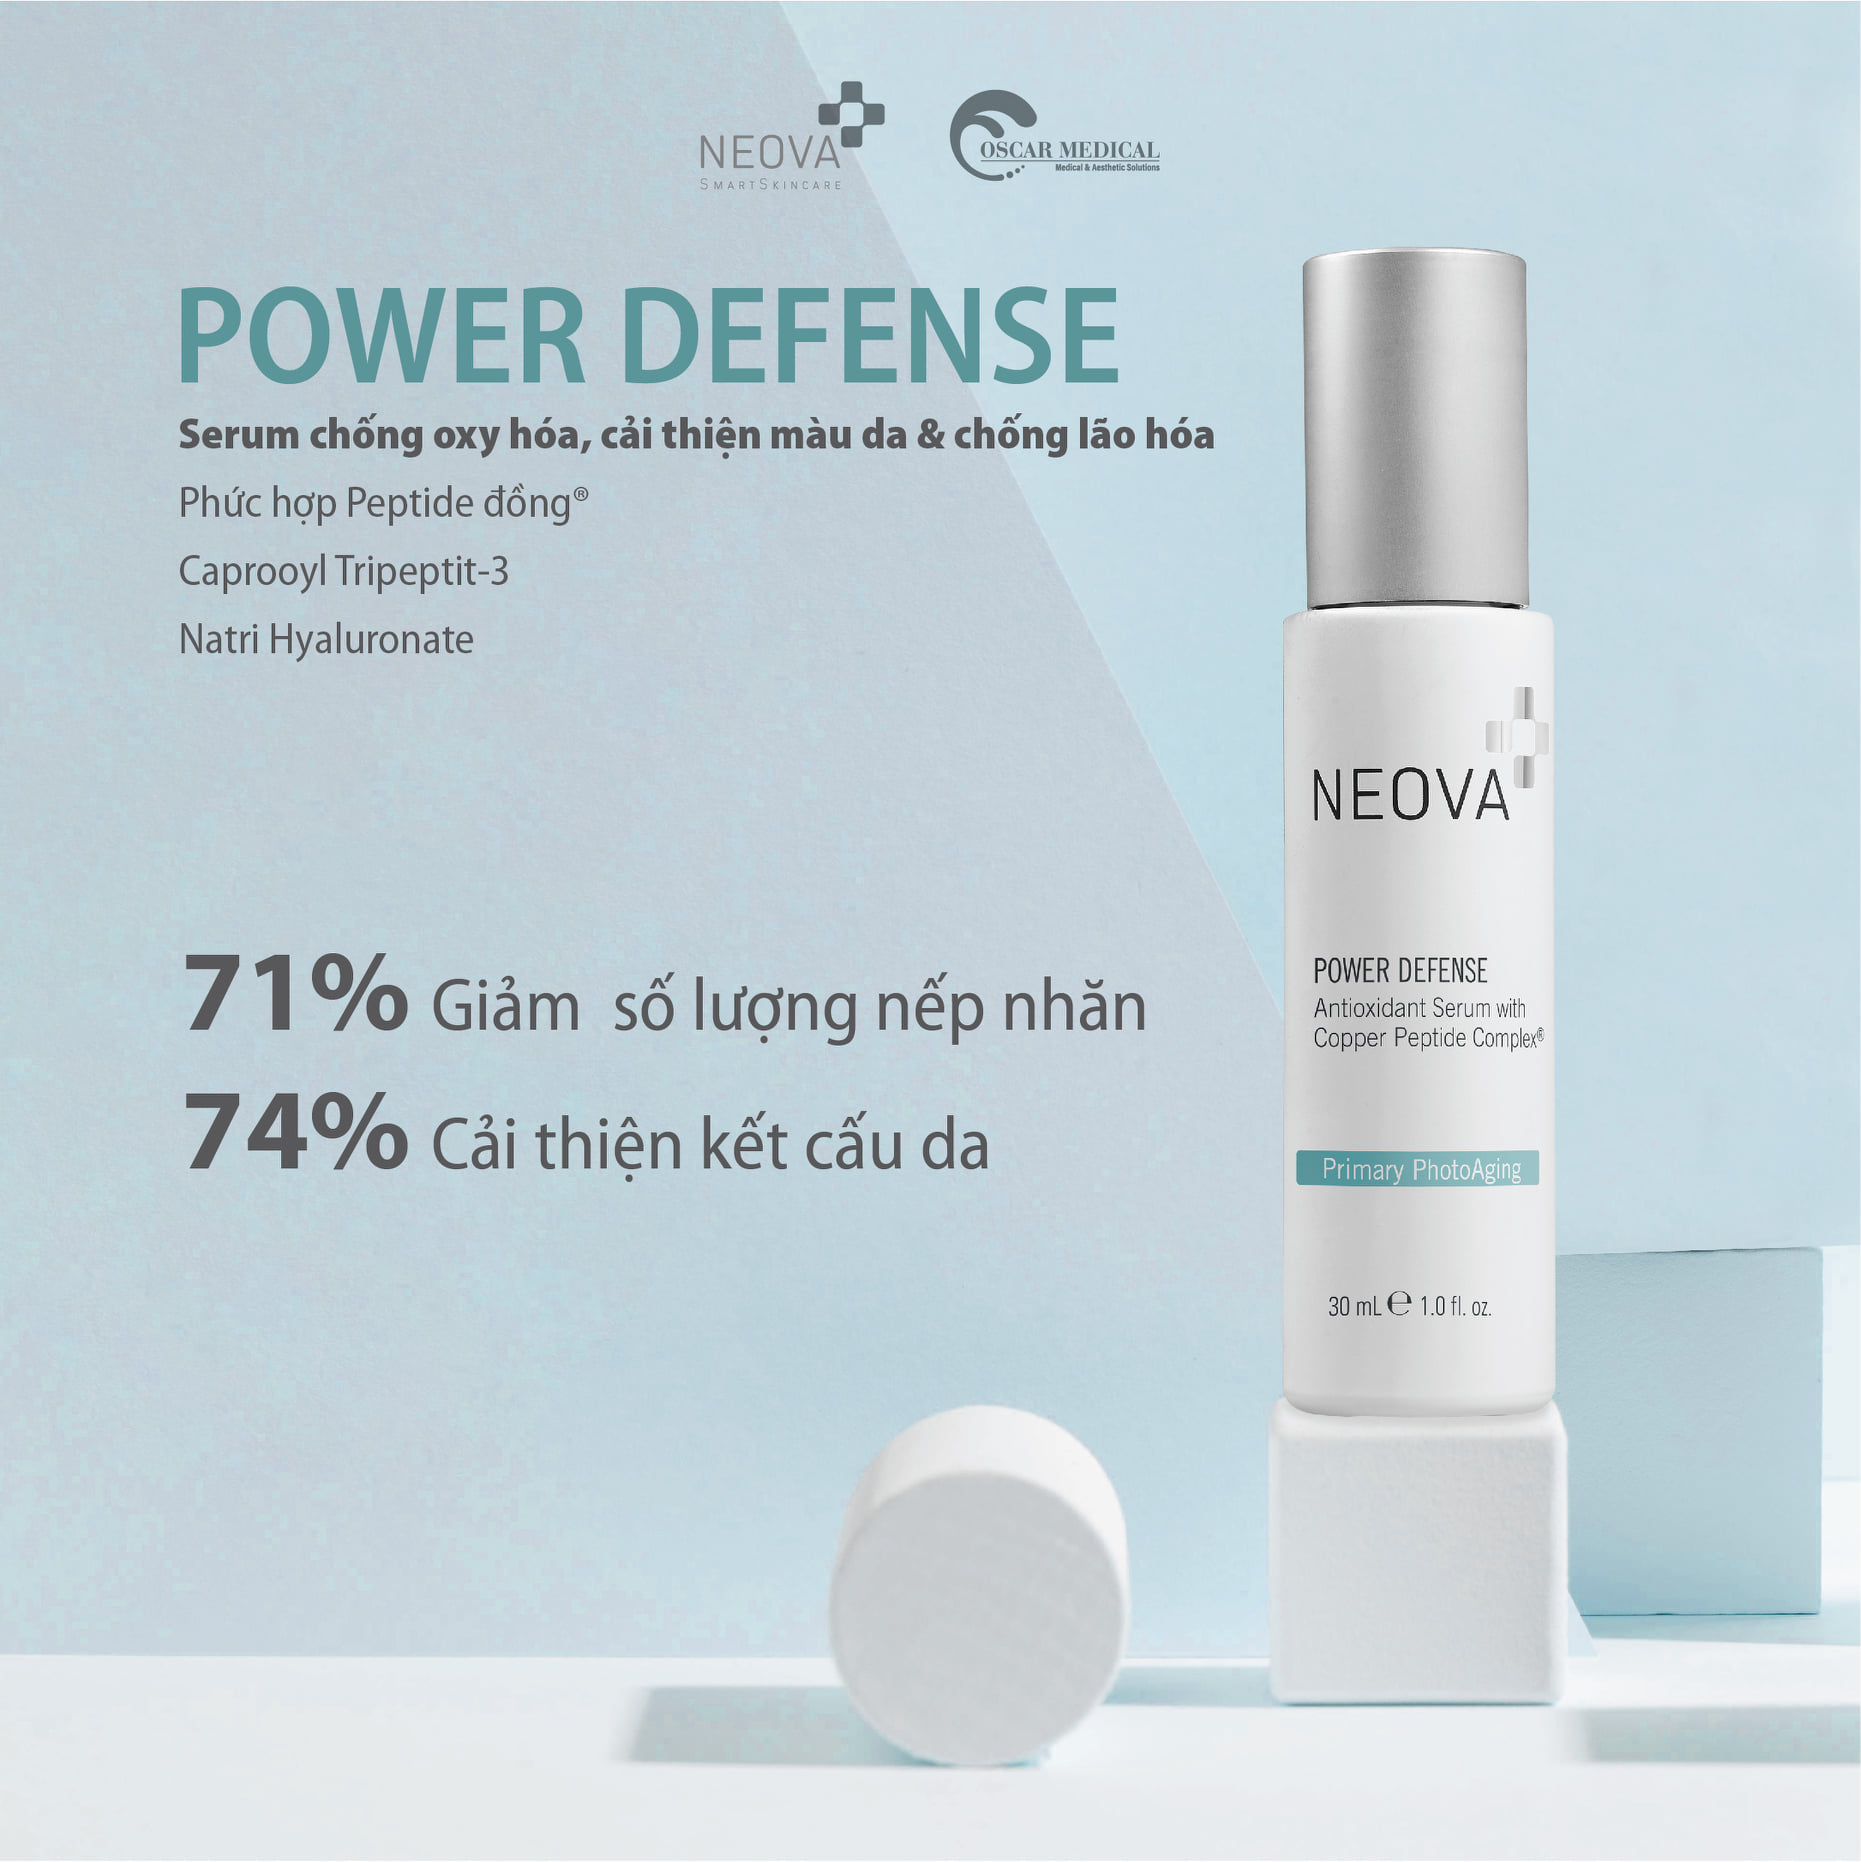 Neova Power Defense - Serum Cu3, Chống Oxy Hóa, Giảm Nám